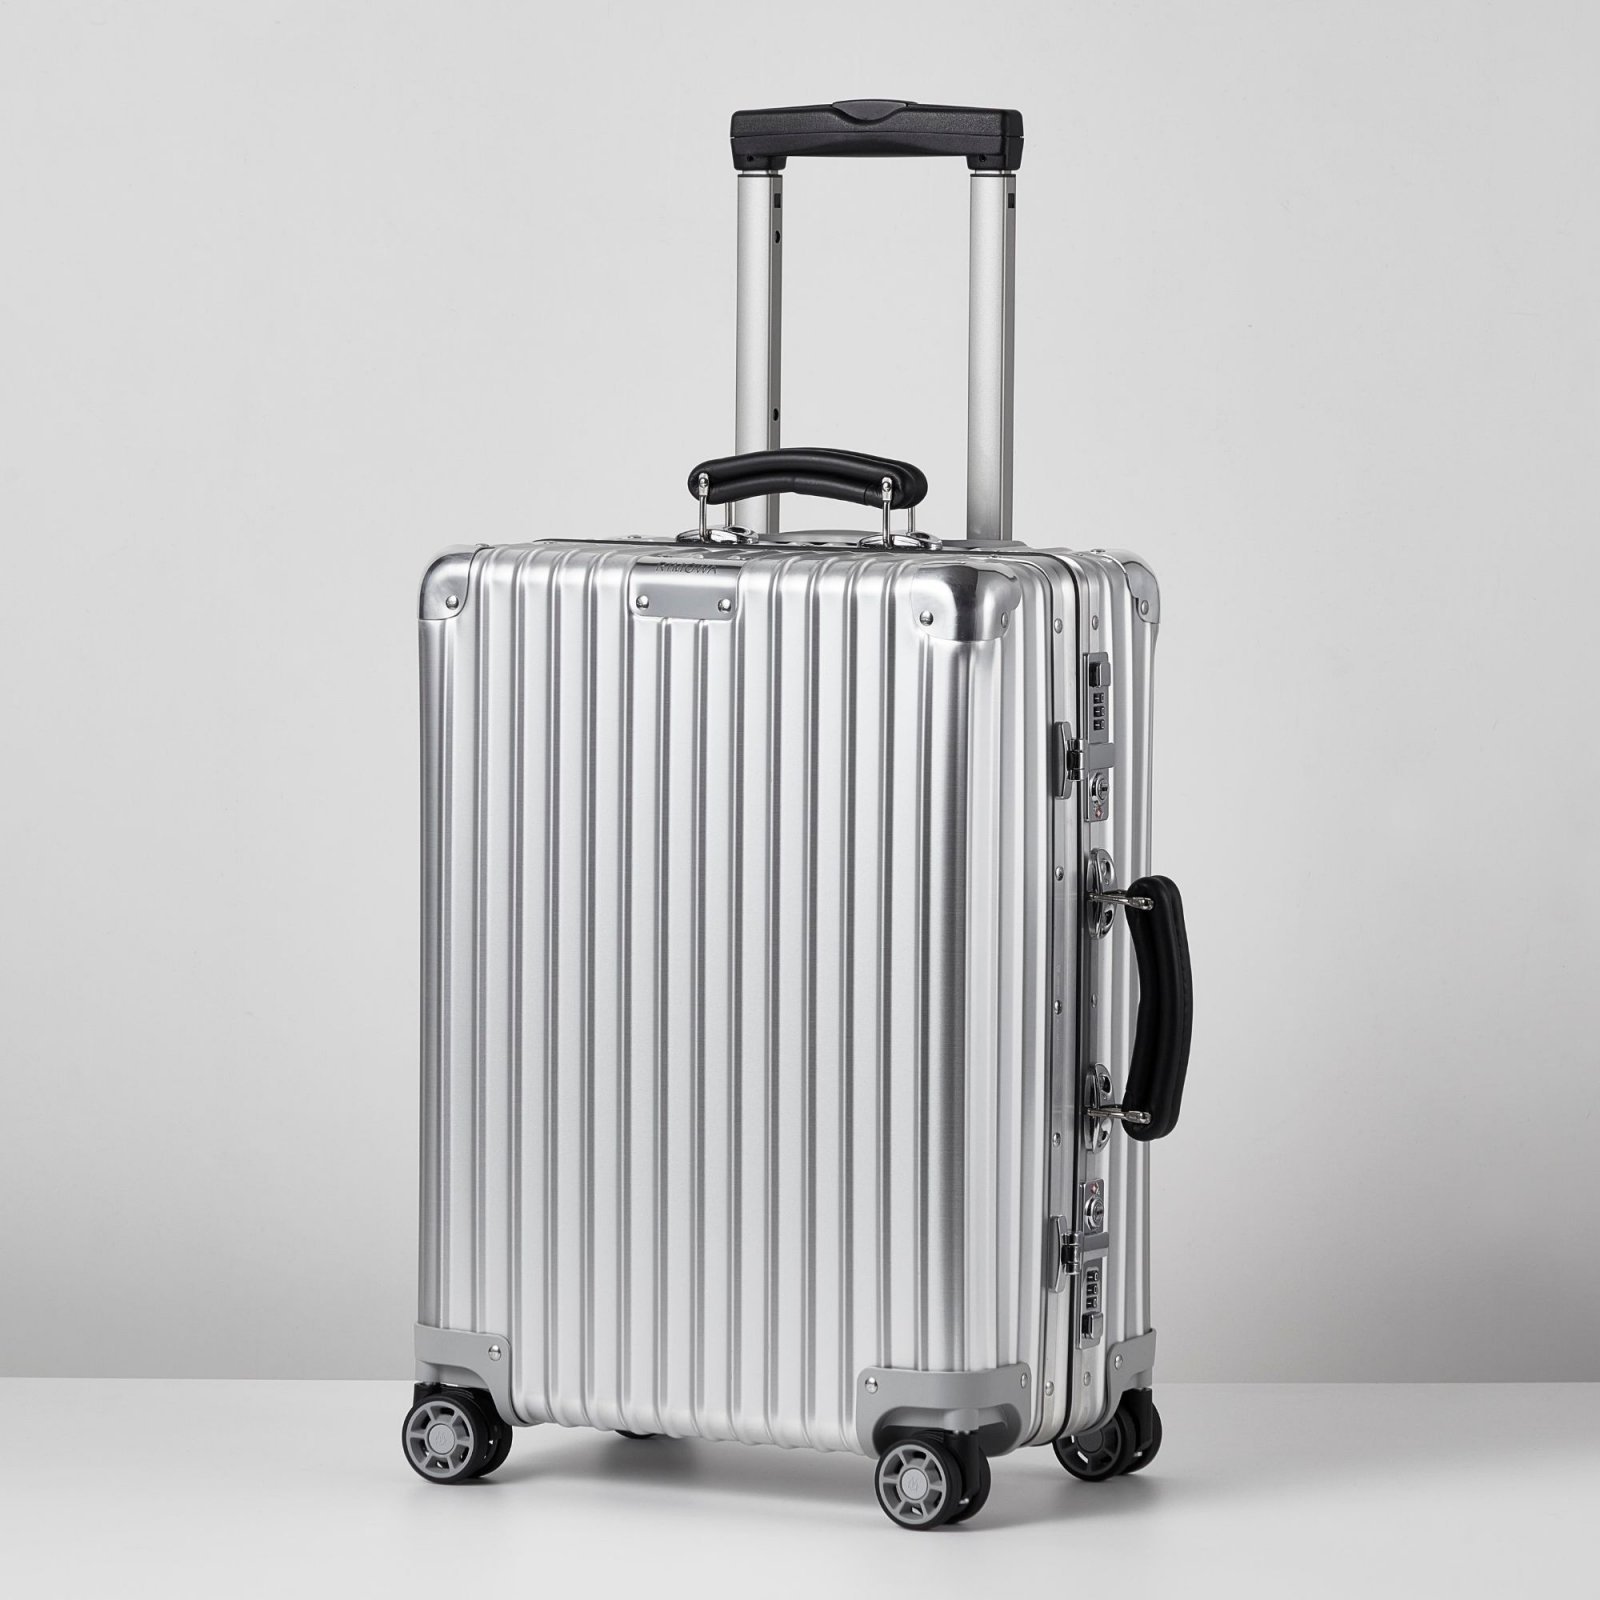 ドイツ流のものづくりが光る。リモワのスーツケースが美しく機能的な